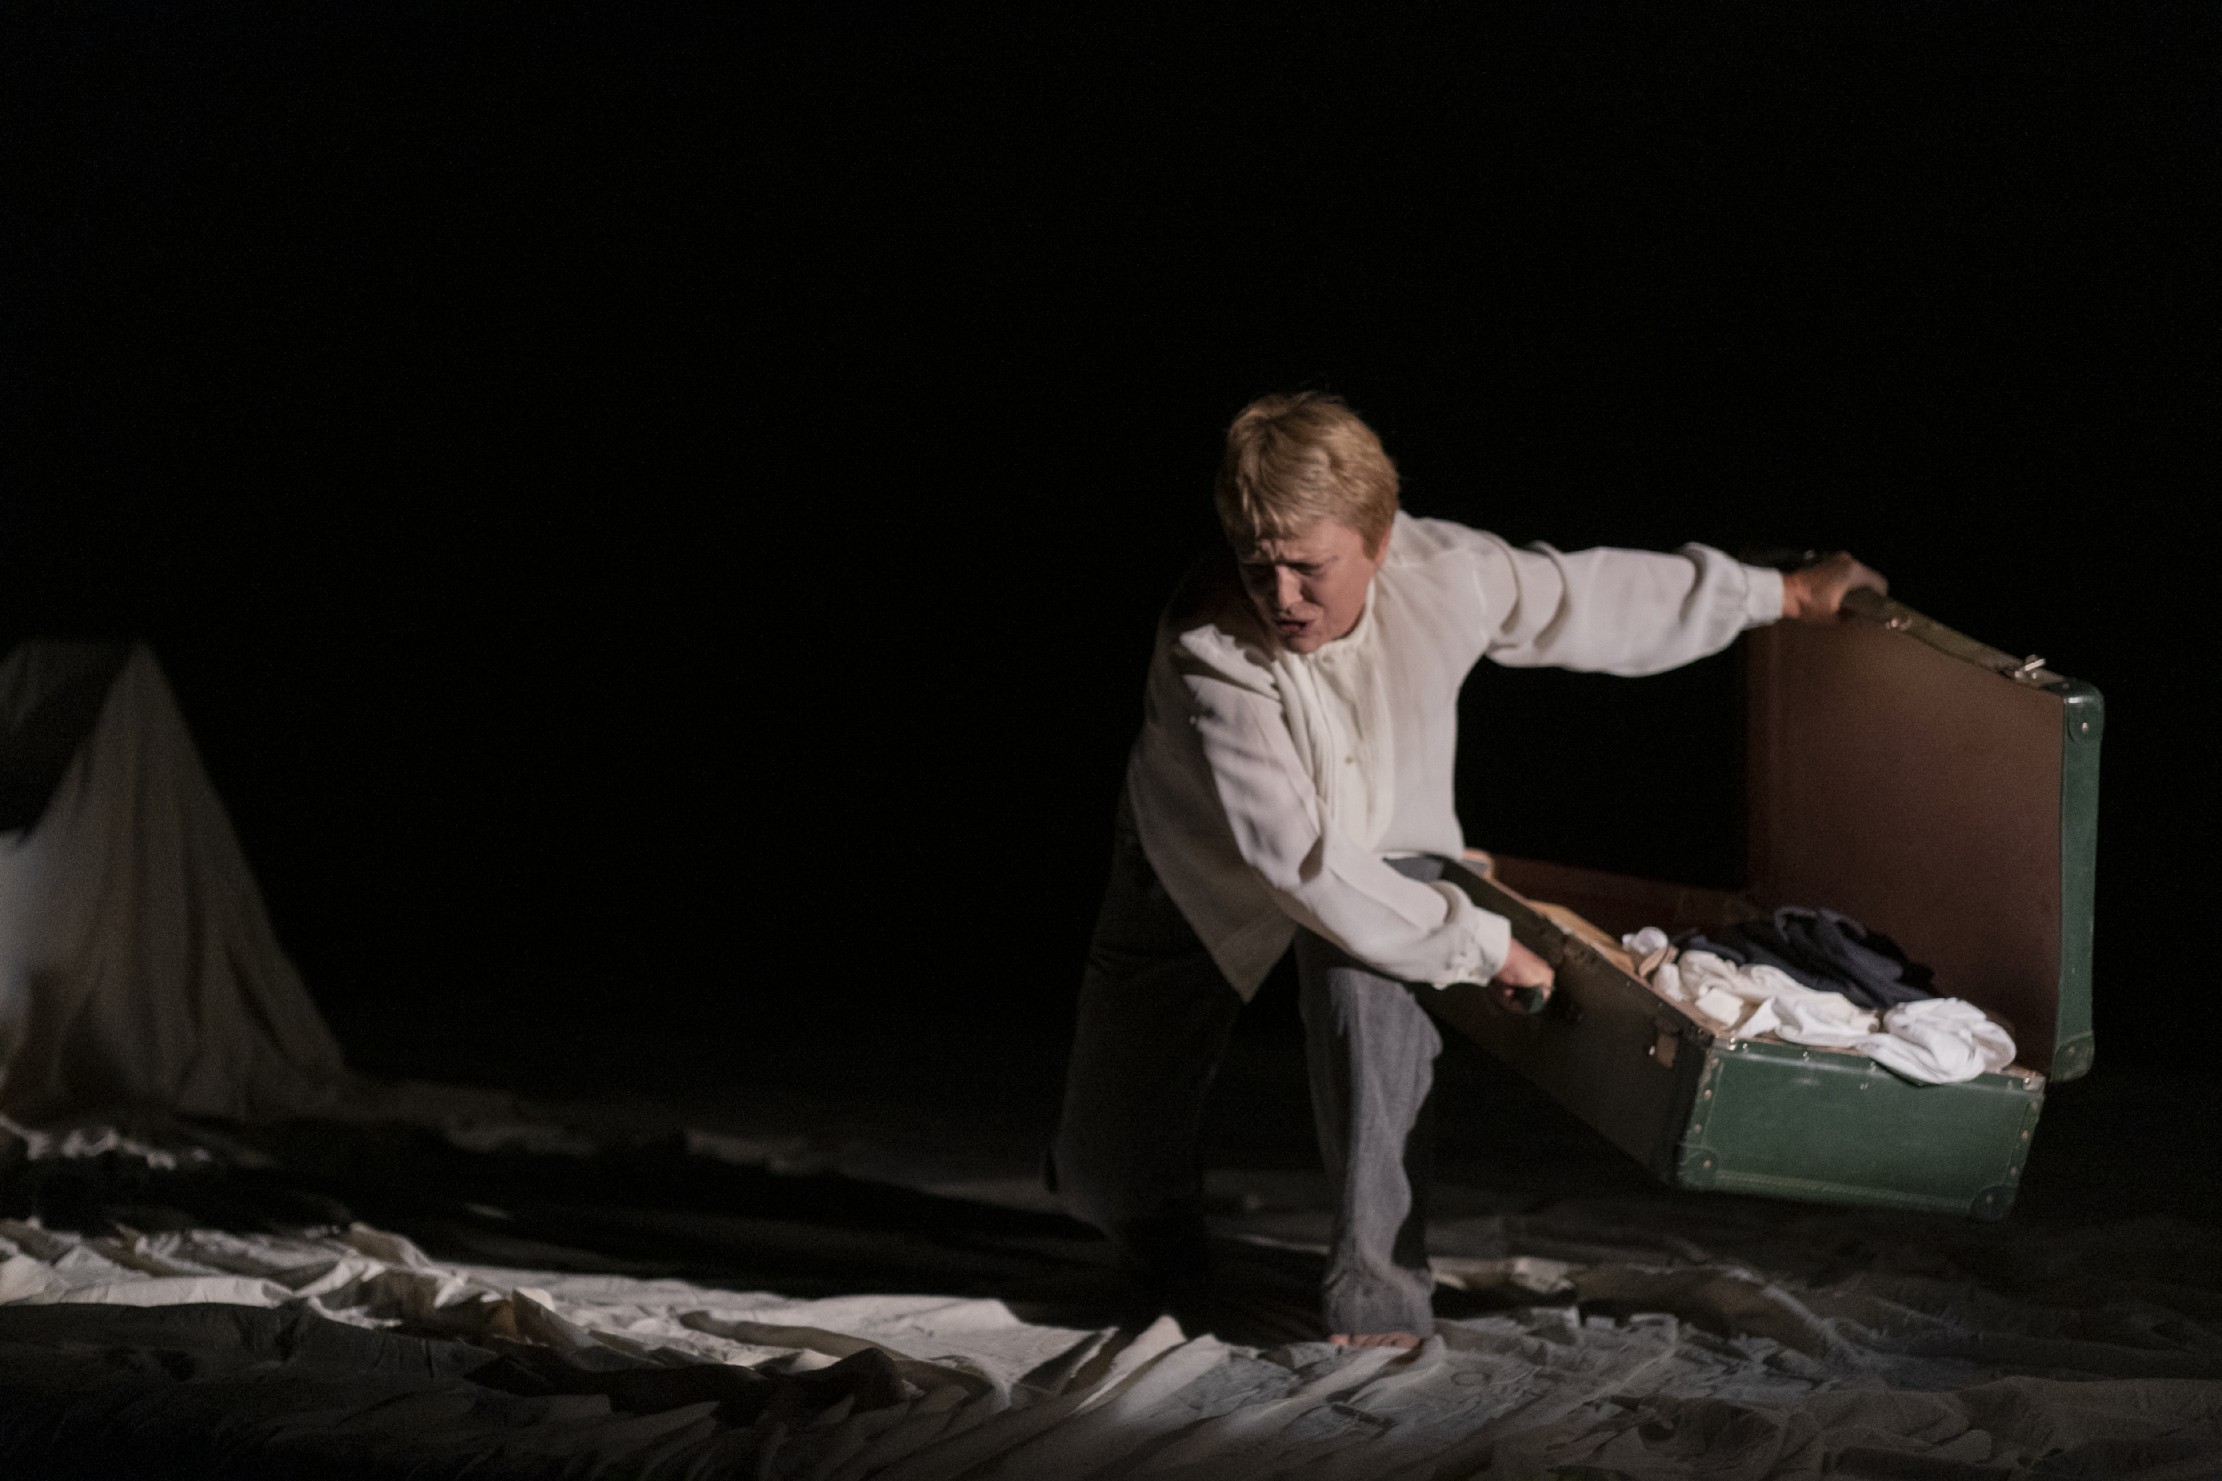 OFF/OFF Theatre, in scena Mascia Musy con Preghiera per Cernobyl, tratto dall’opera di Svetlana Aleksievic zerkalo spettacolo